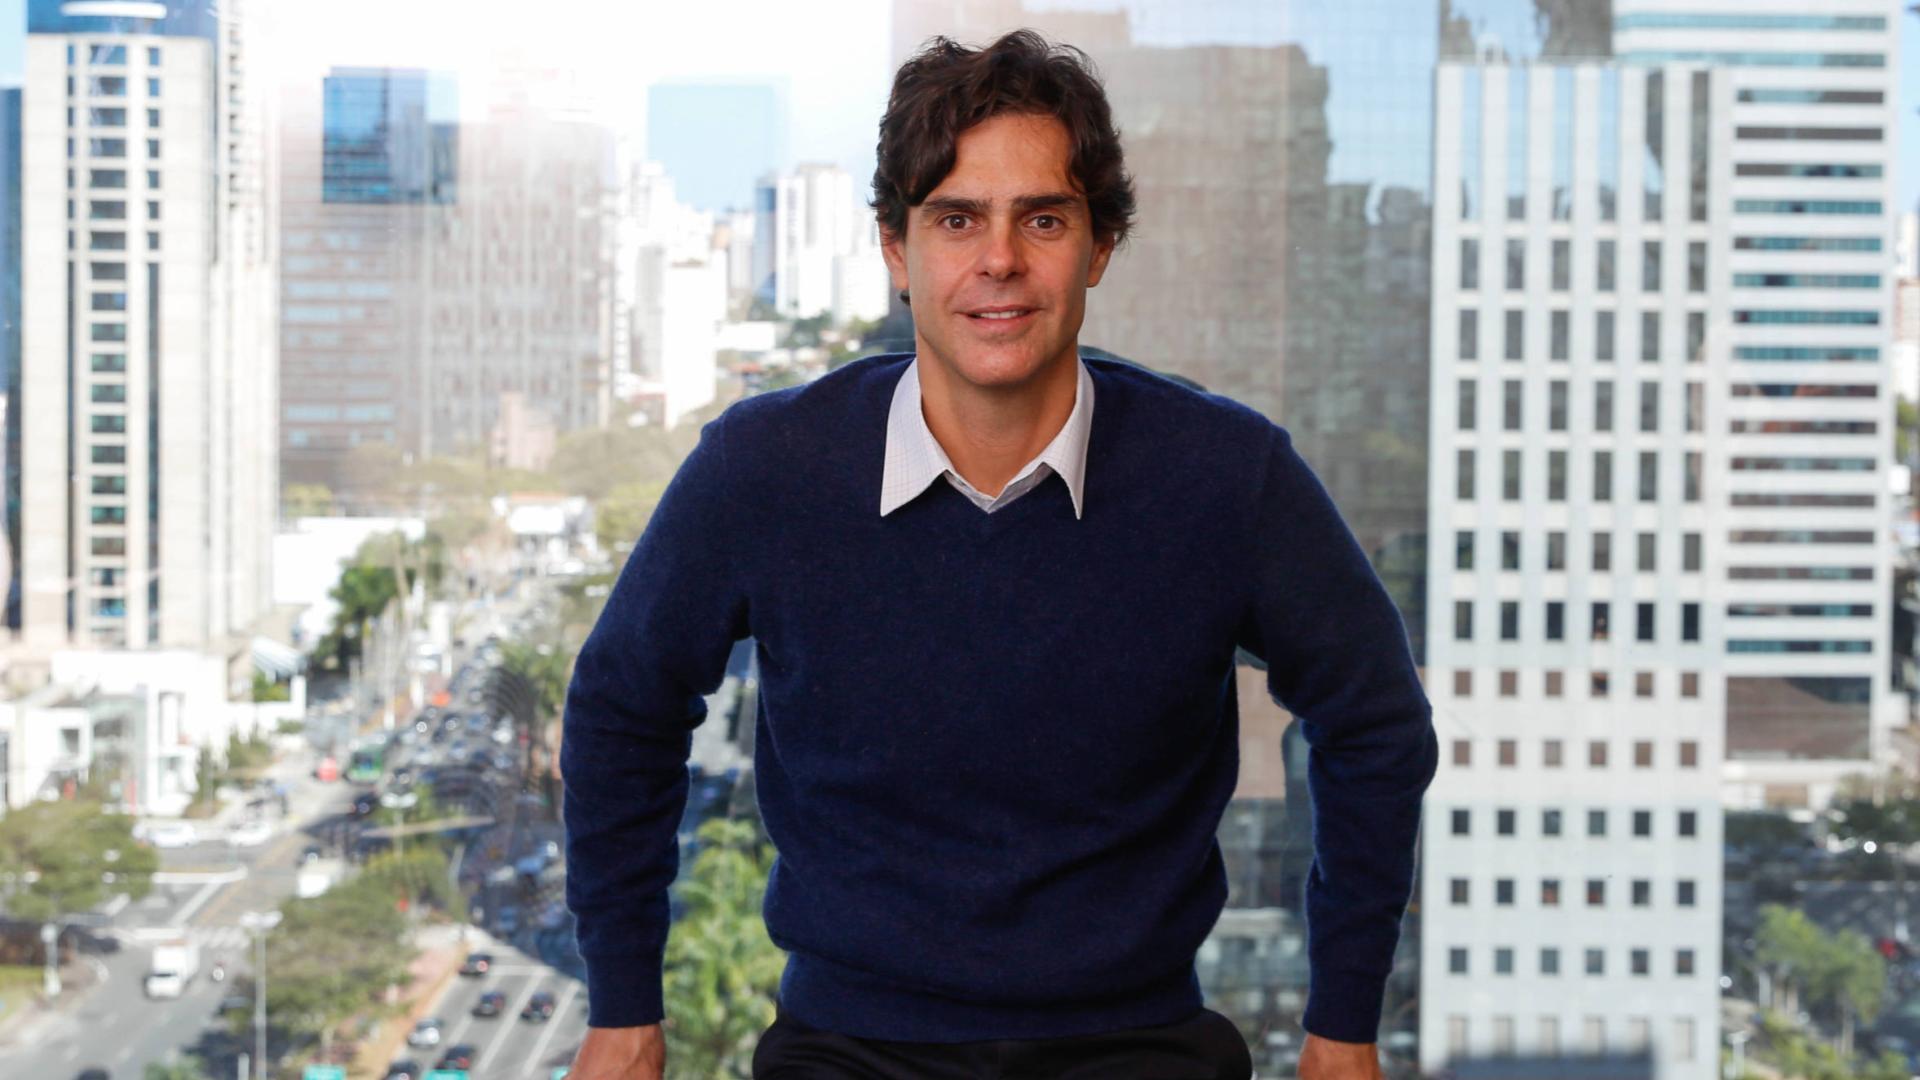 Guilherme Benchimol – Mercado financeiro em transformação #MoneyWeek